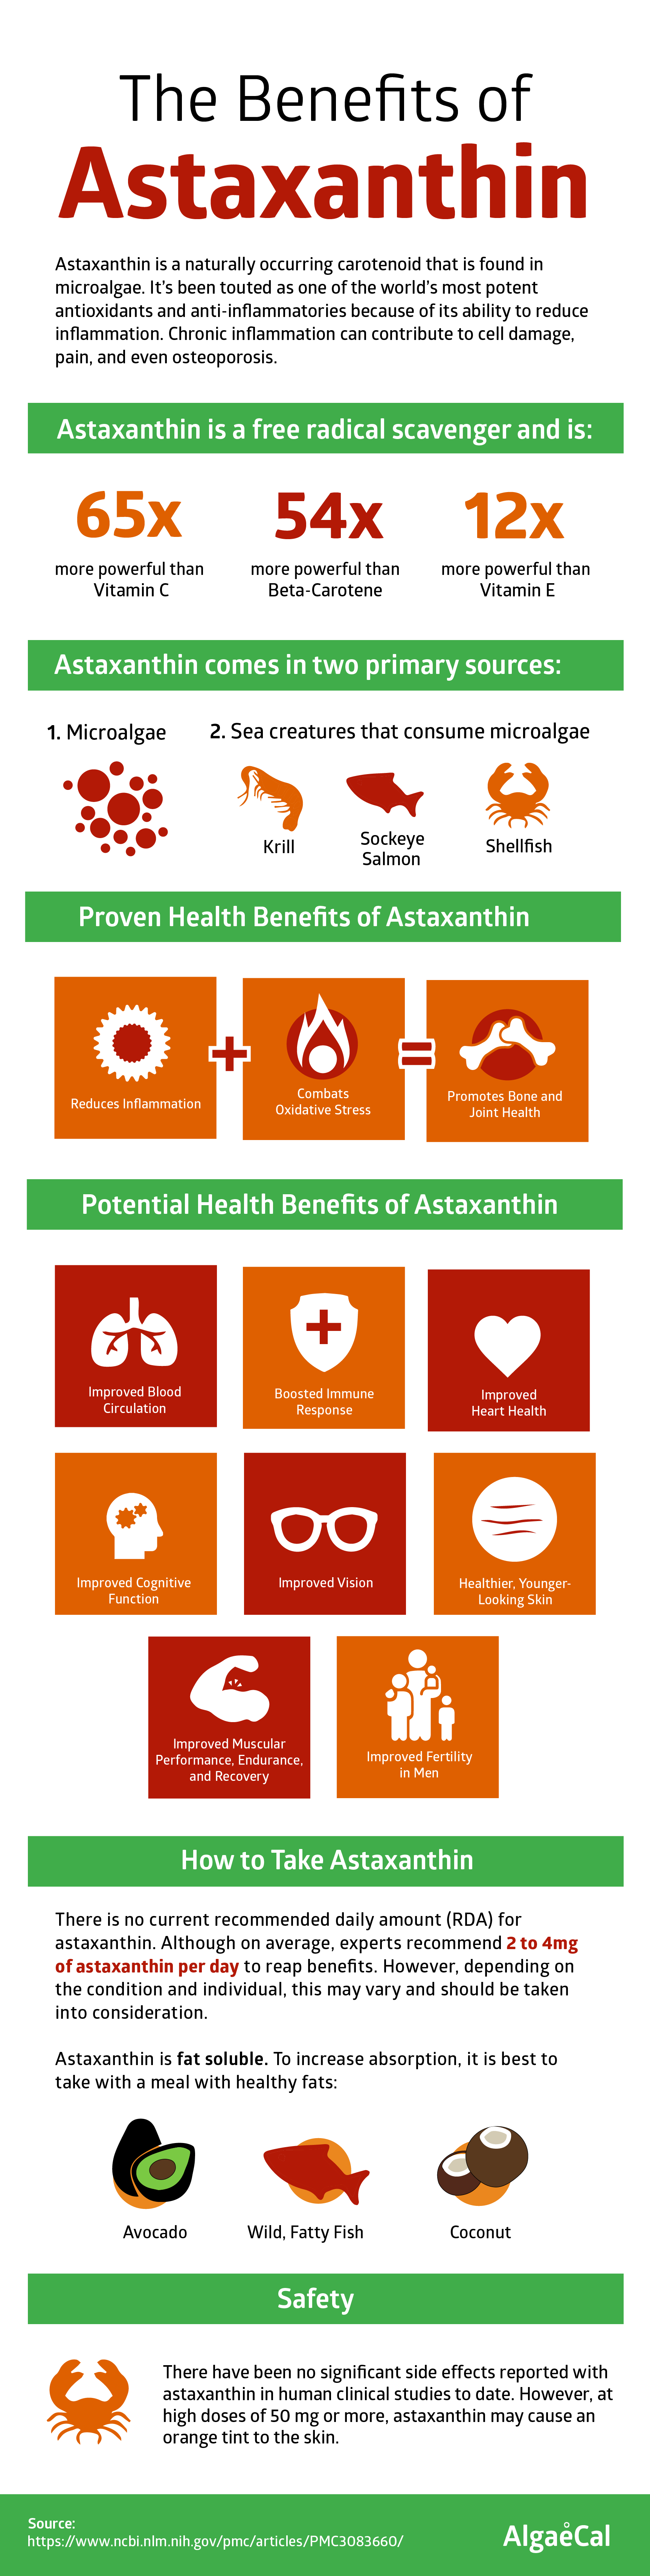 Astaxanthin Benefits